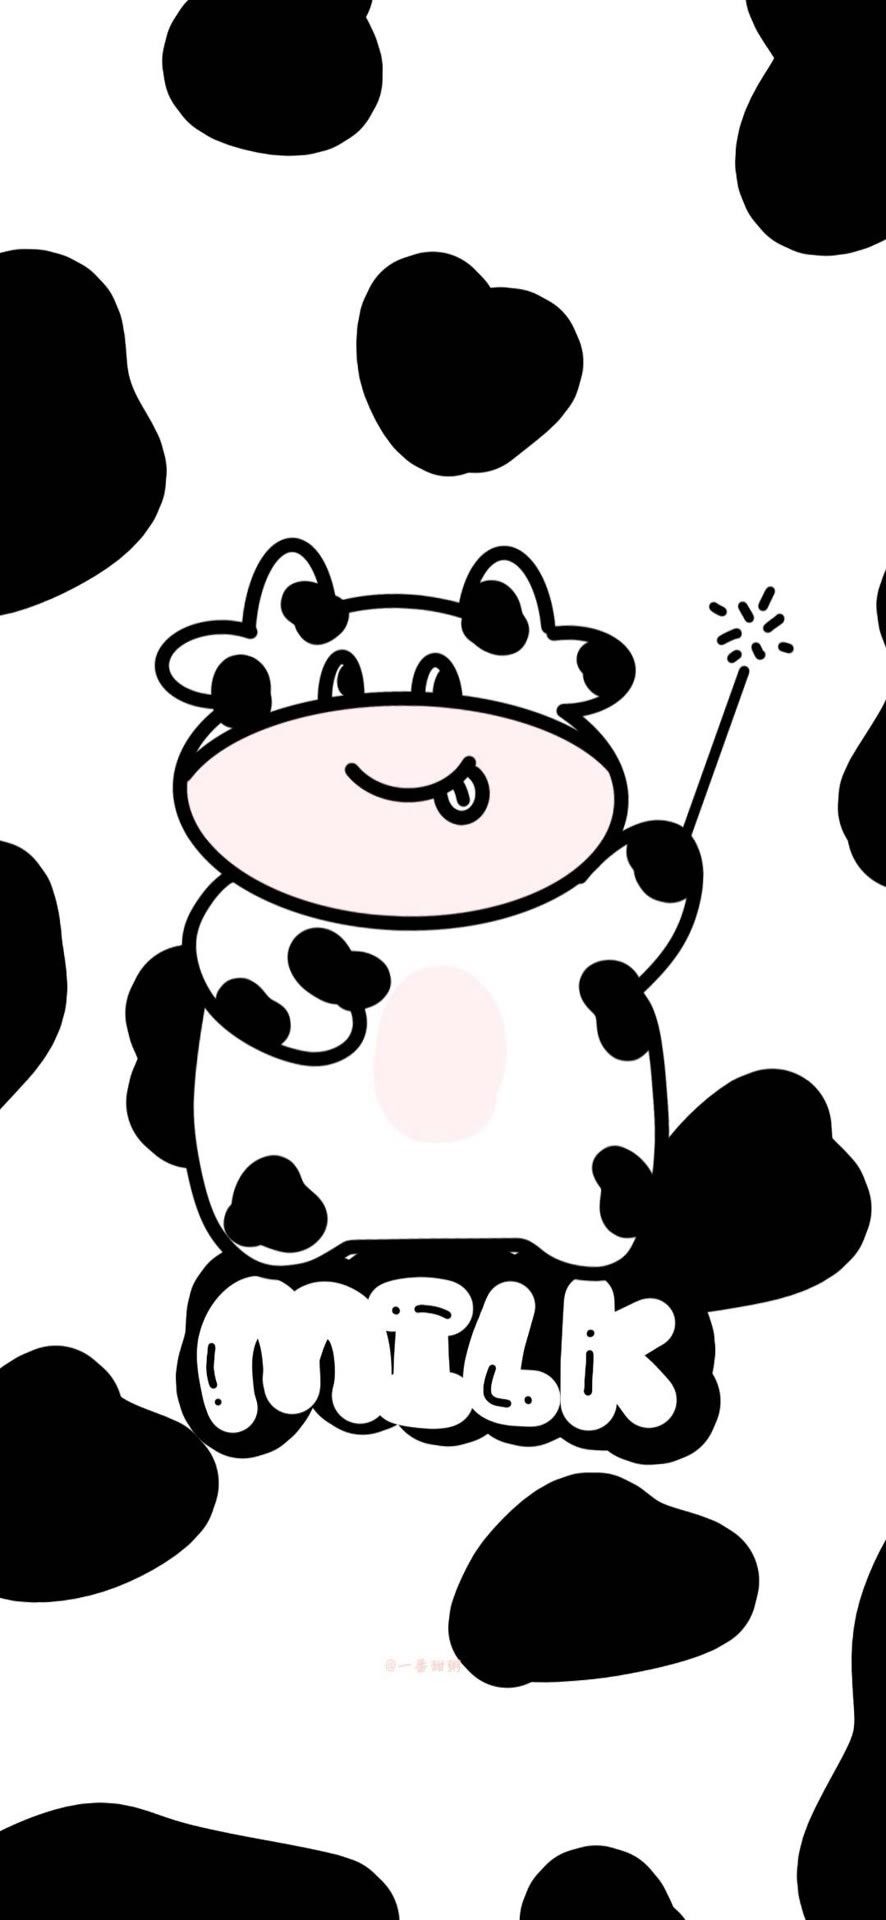 Nếu bạn thích những điều đáng yêu và đáng yêu, hãy xem hình nền bò sữa cute này. Nó sẽ làm bạn cười và cảm thấy niềm vui trong lòng với những chiếc cánh tay nhỏ xinh của bò sữa.